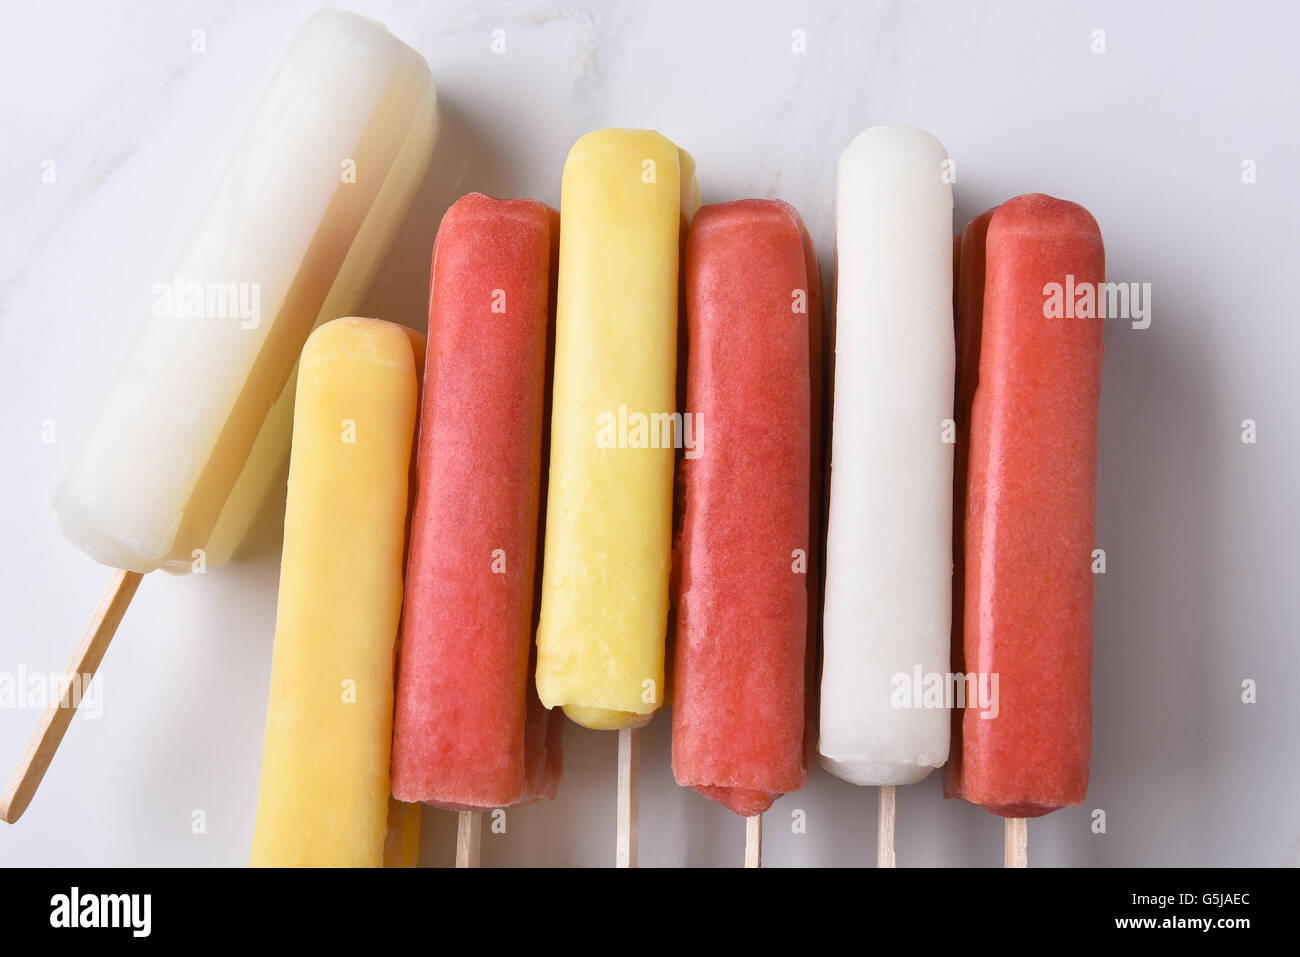 Vue de dessus d'un groupe de pop sur la glace assorties d'un comptoir en marbre. Rouge, jaune et blanc aromatisé fruits pop sur leurs côtés. Banque D'Images